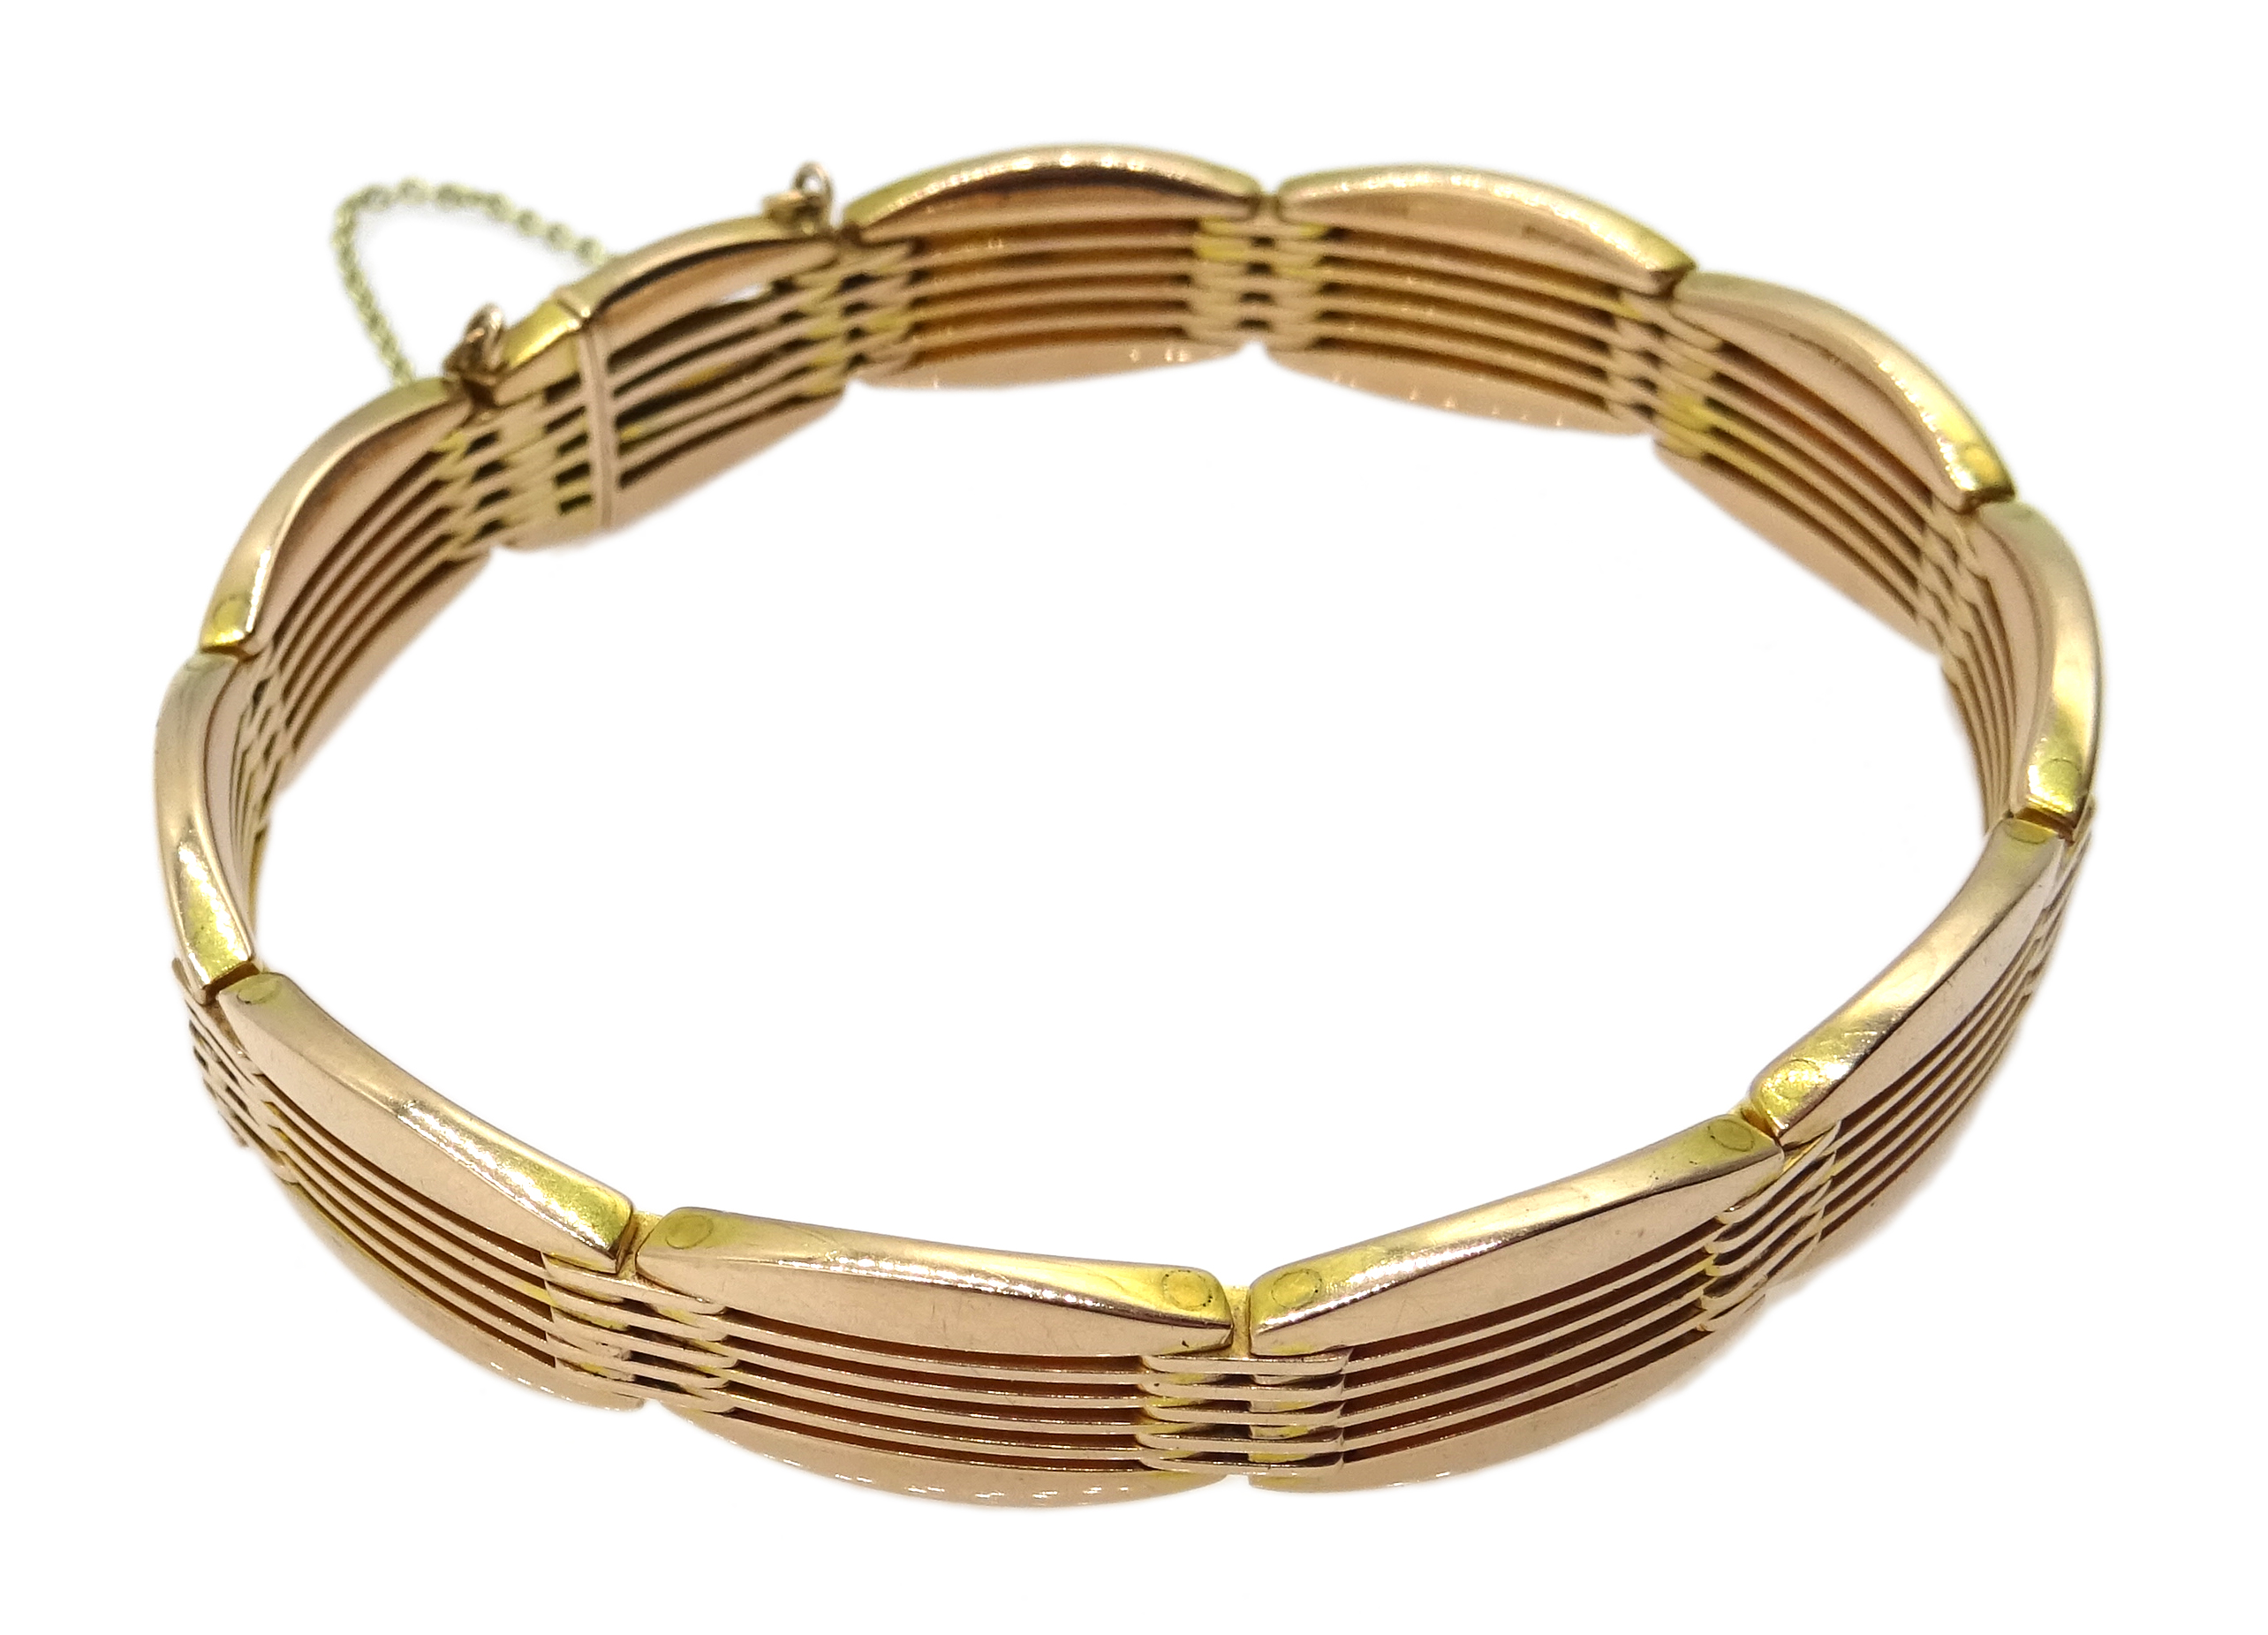 Rose gold four bar oval link bracelet, - Image 2 of 2